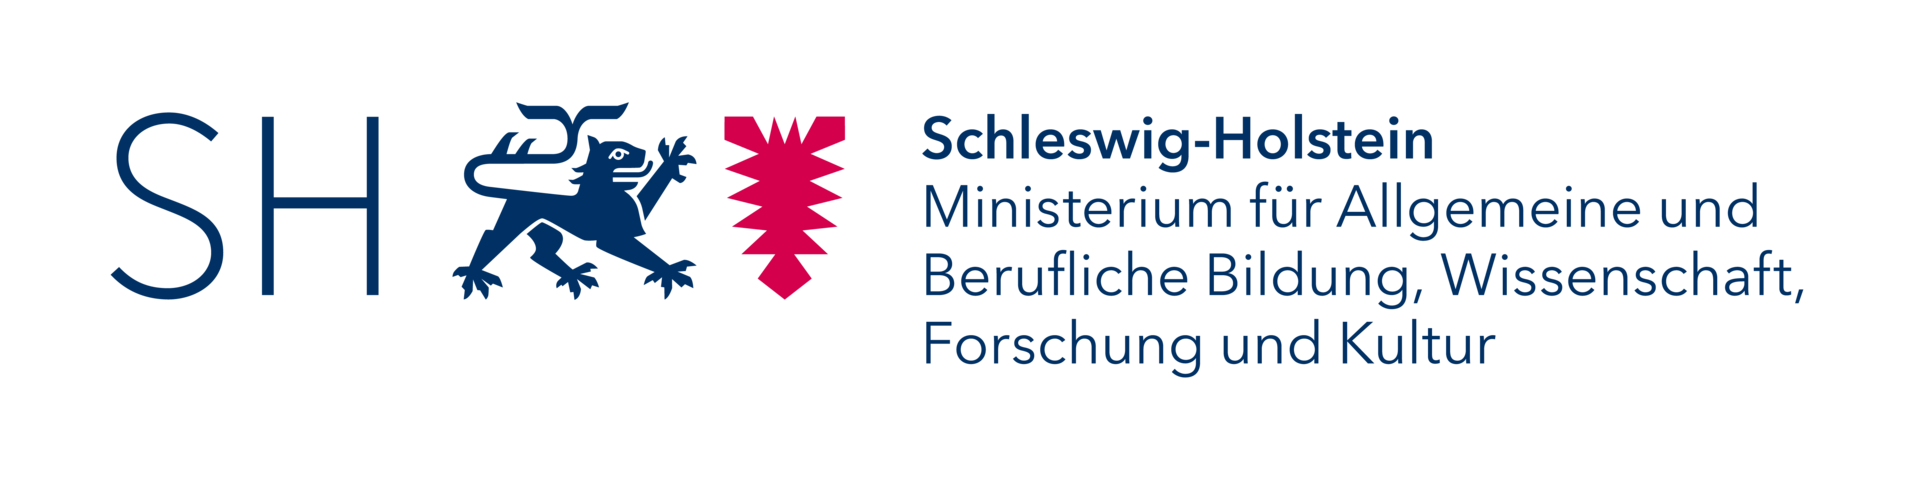 Schleswig-Holstein Ministerium für Allgemeine und Berufliche Bildung, Wissenschaft, Forschung und Kultur